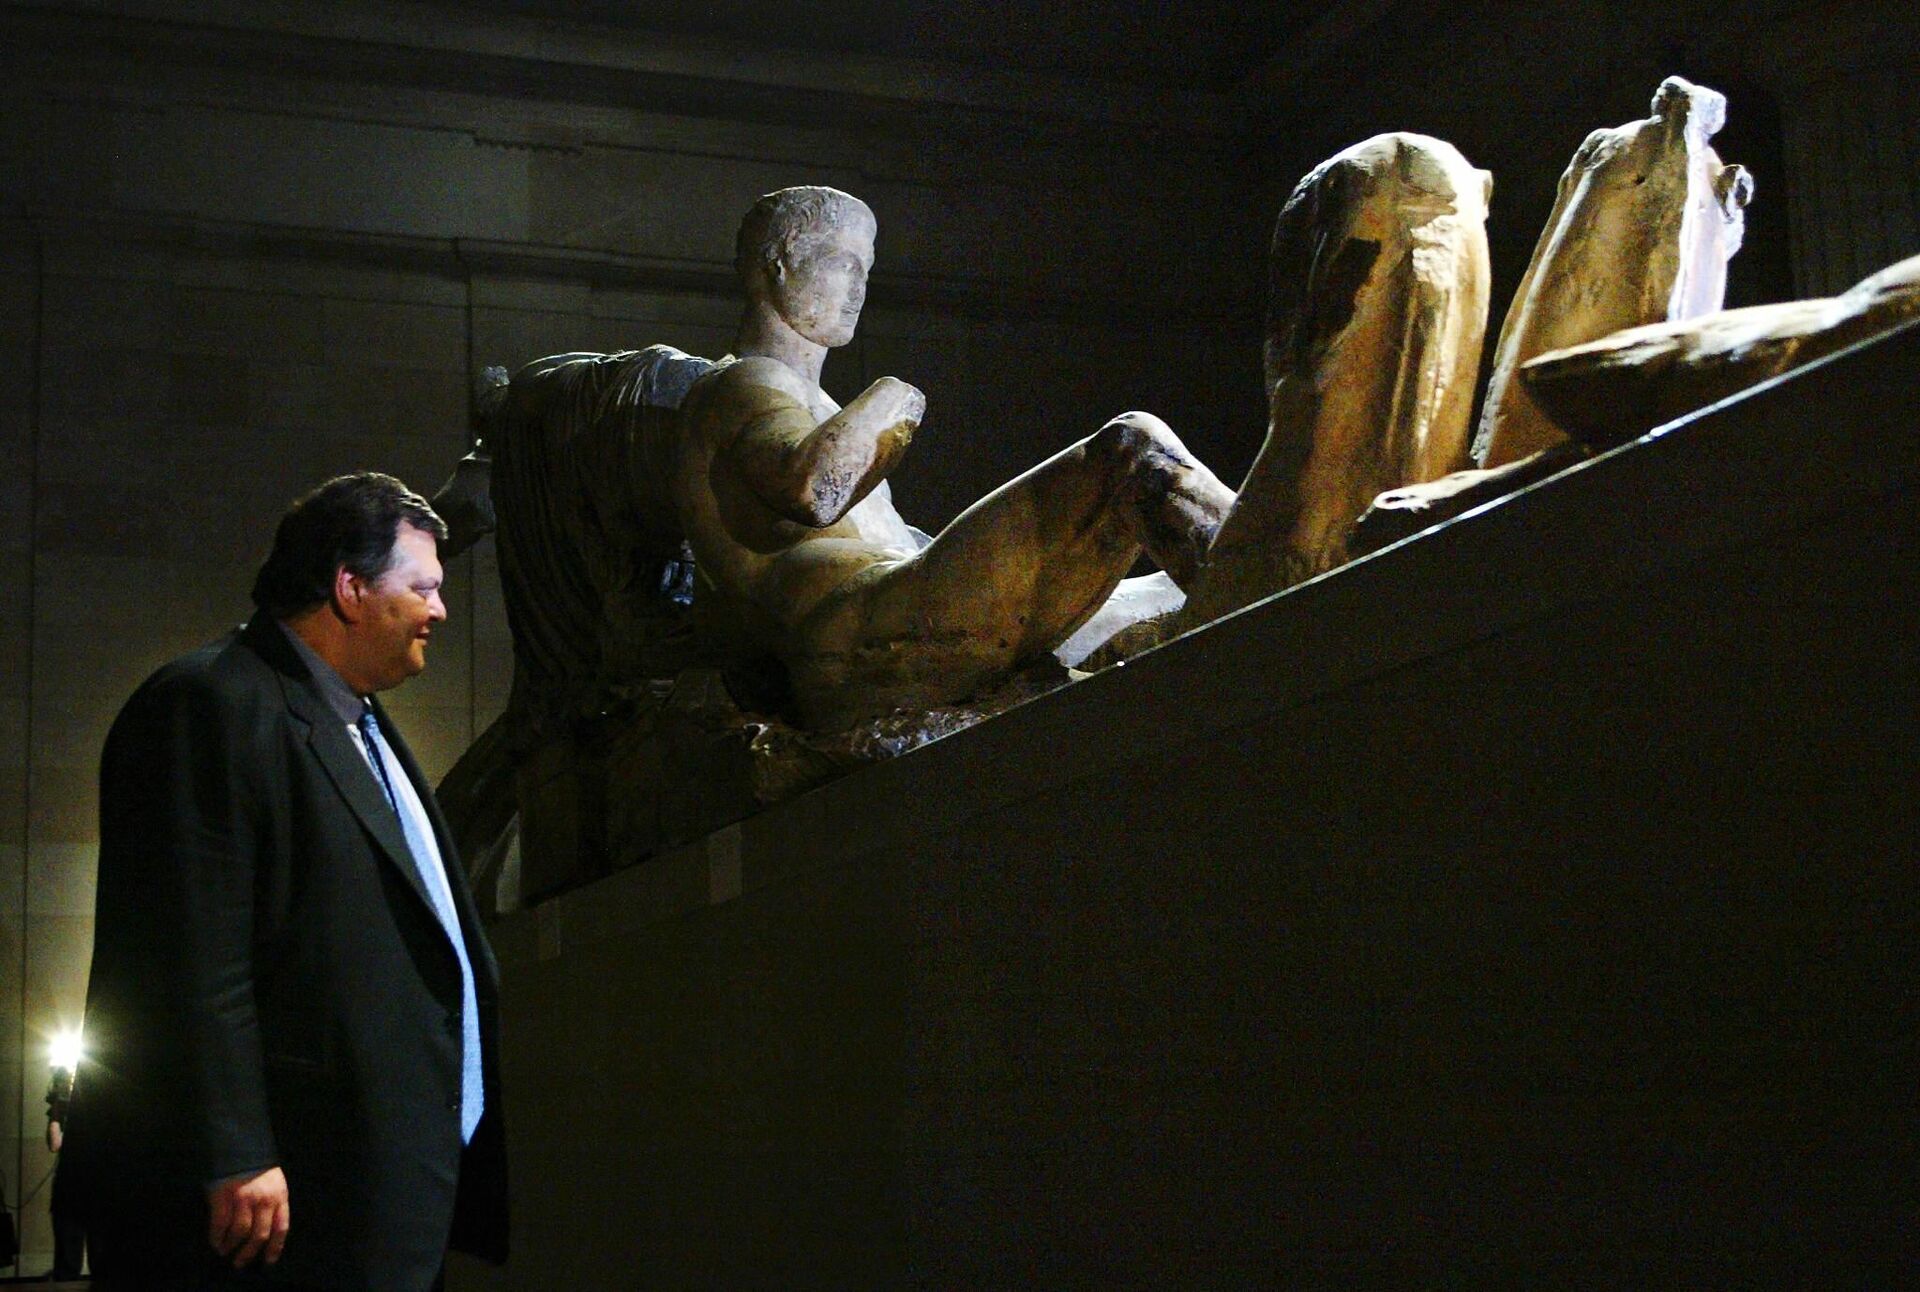 Profesor Evangelos Venizelos, grčki ministar kulture i sporta, ispituje Elginove mermere u Britanskom muzeju u Londonu 11. novembra 2002. Venizelos se sastao sa direktorom muzeja kako bi razgovarao o mogućem rešenju za vraćanje mermera u Grčku. Mermeri, isklesani oko 440. godine, bili su deo Partenona sve dok ih nije uzeo lord Elgin i doneo u Britaniju u 19. veku. - Sputnik Srbija, 1920, 01.12.2023